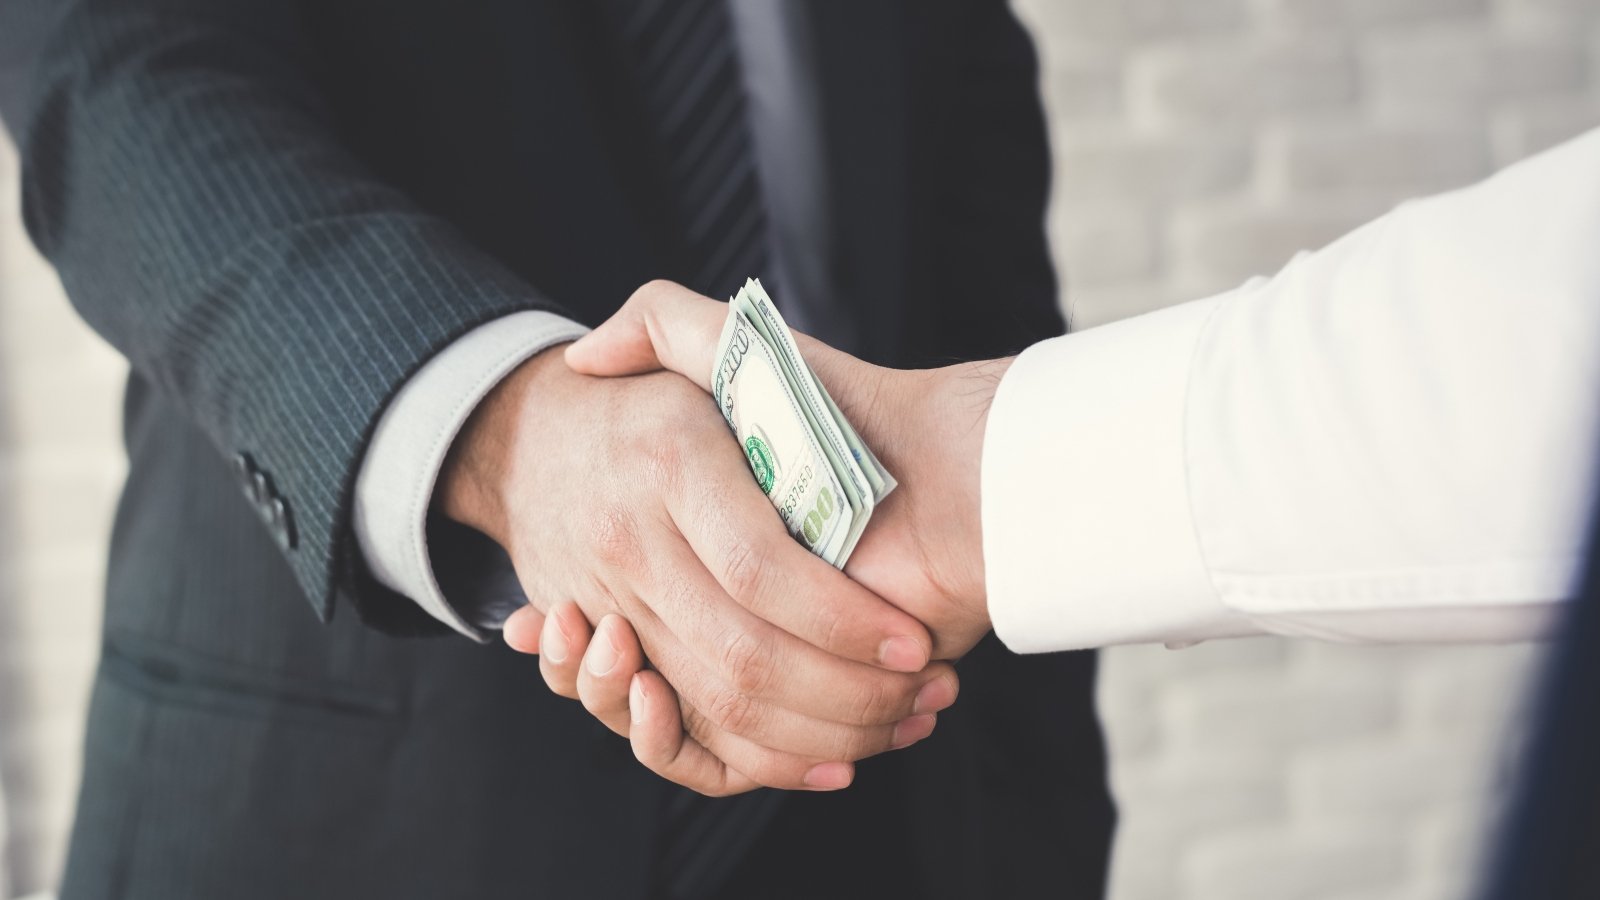 Businessmen handshake with money in hands